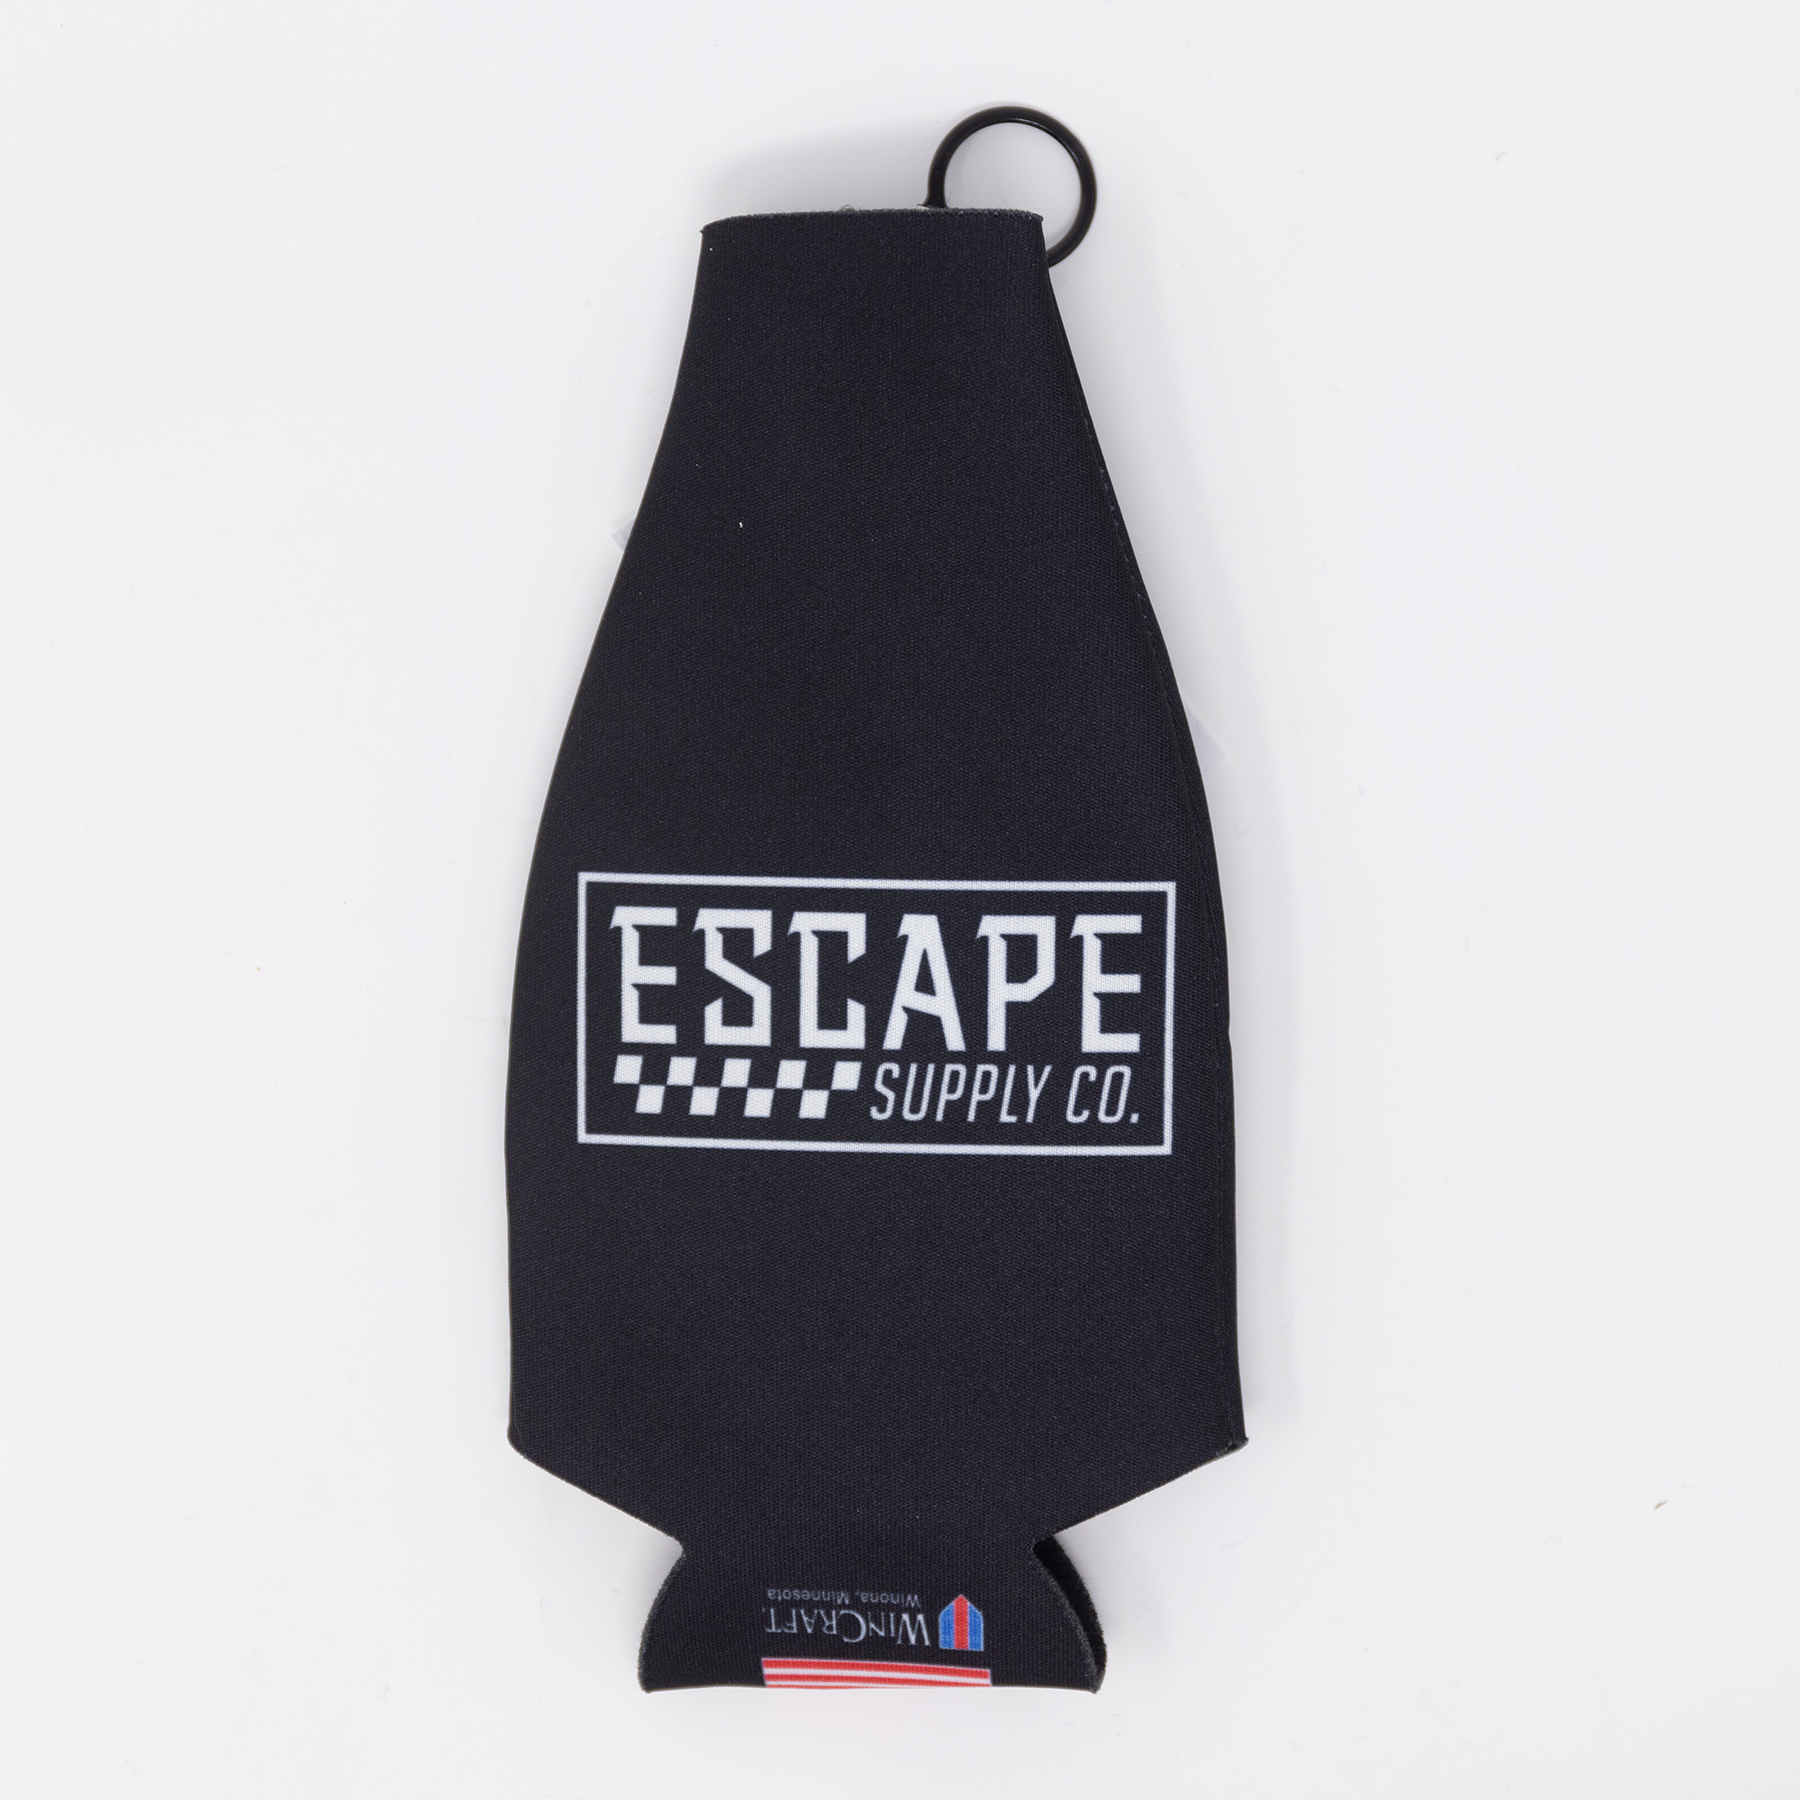 Escape Classic Bottle Koozie